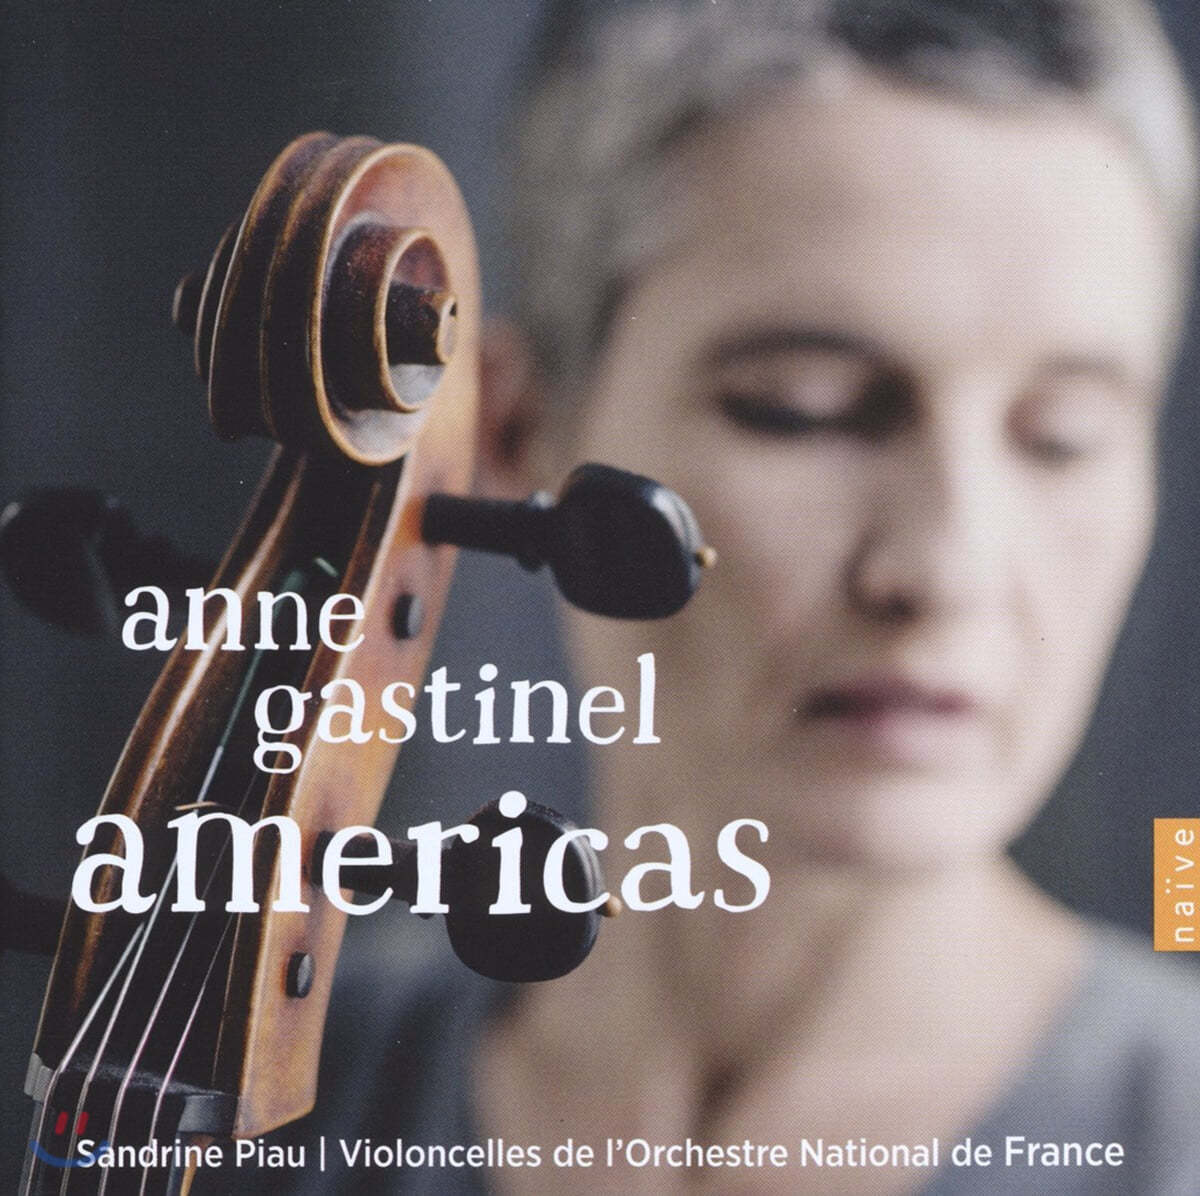 안느 가스티넬 - 아메리카즈 (Anne Gastinel - Americas)